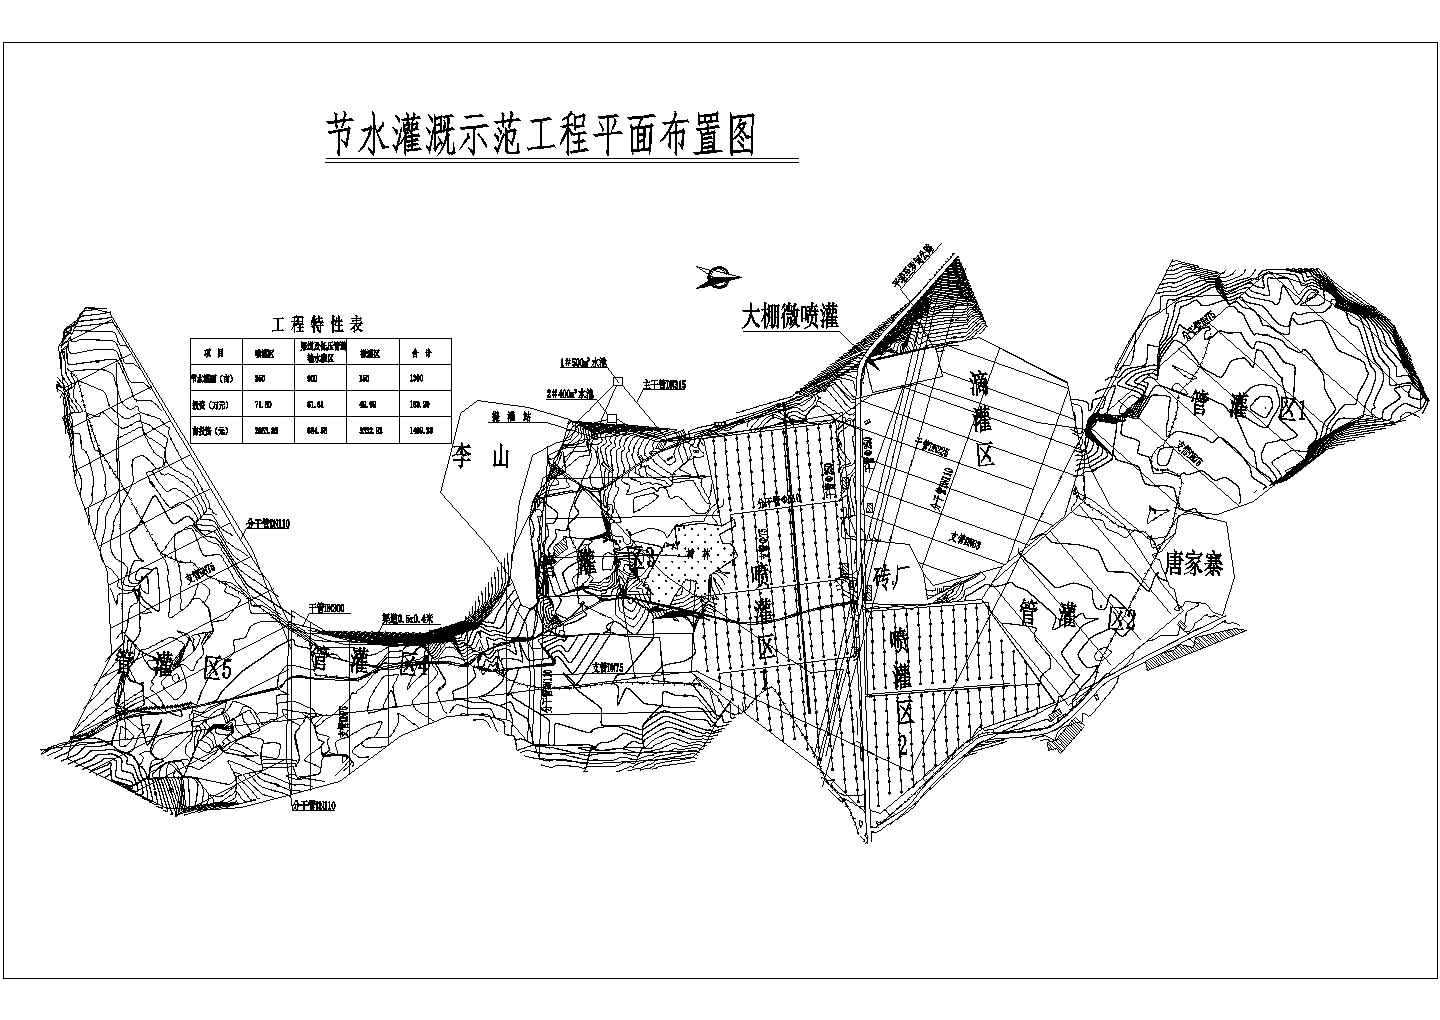 贵州某县节节水示范工程实施方案图纸